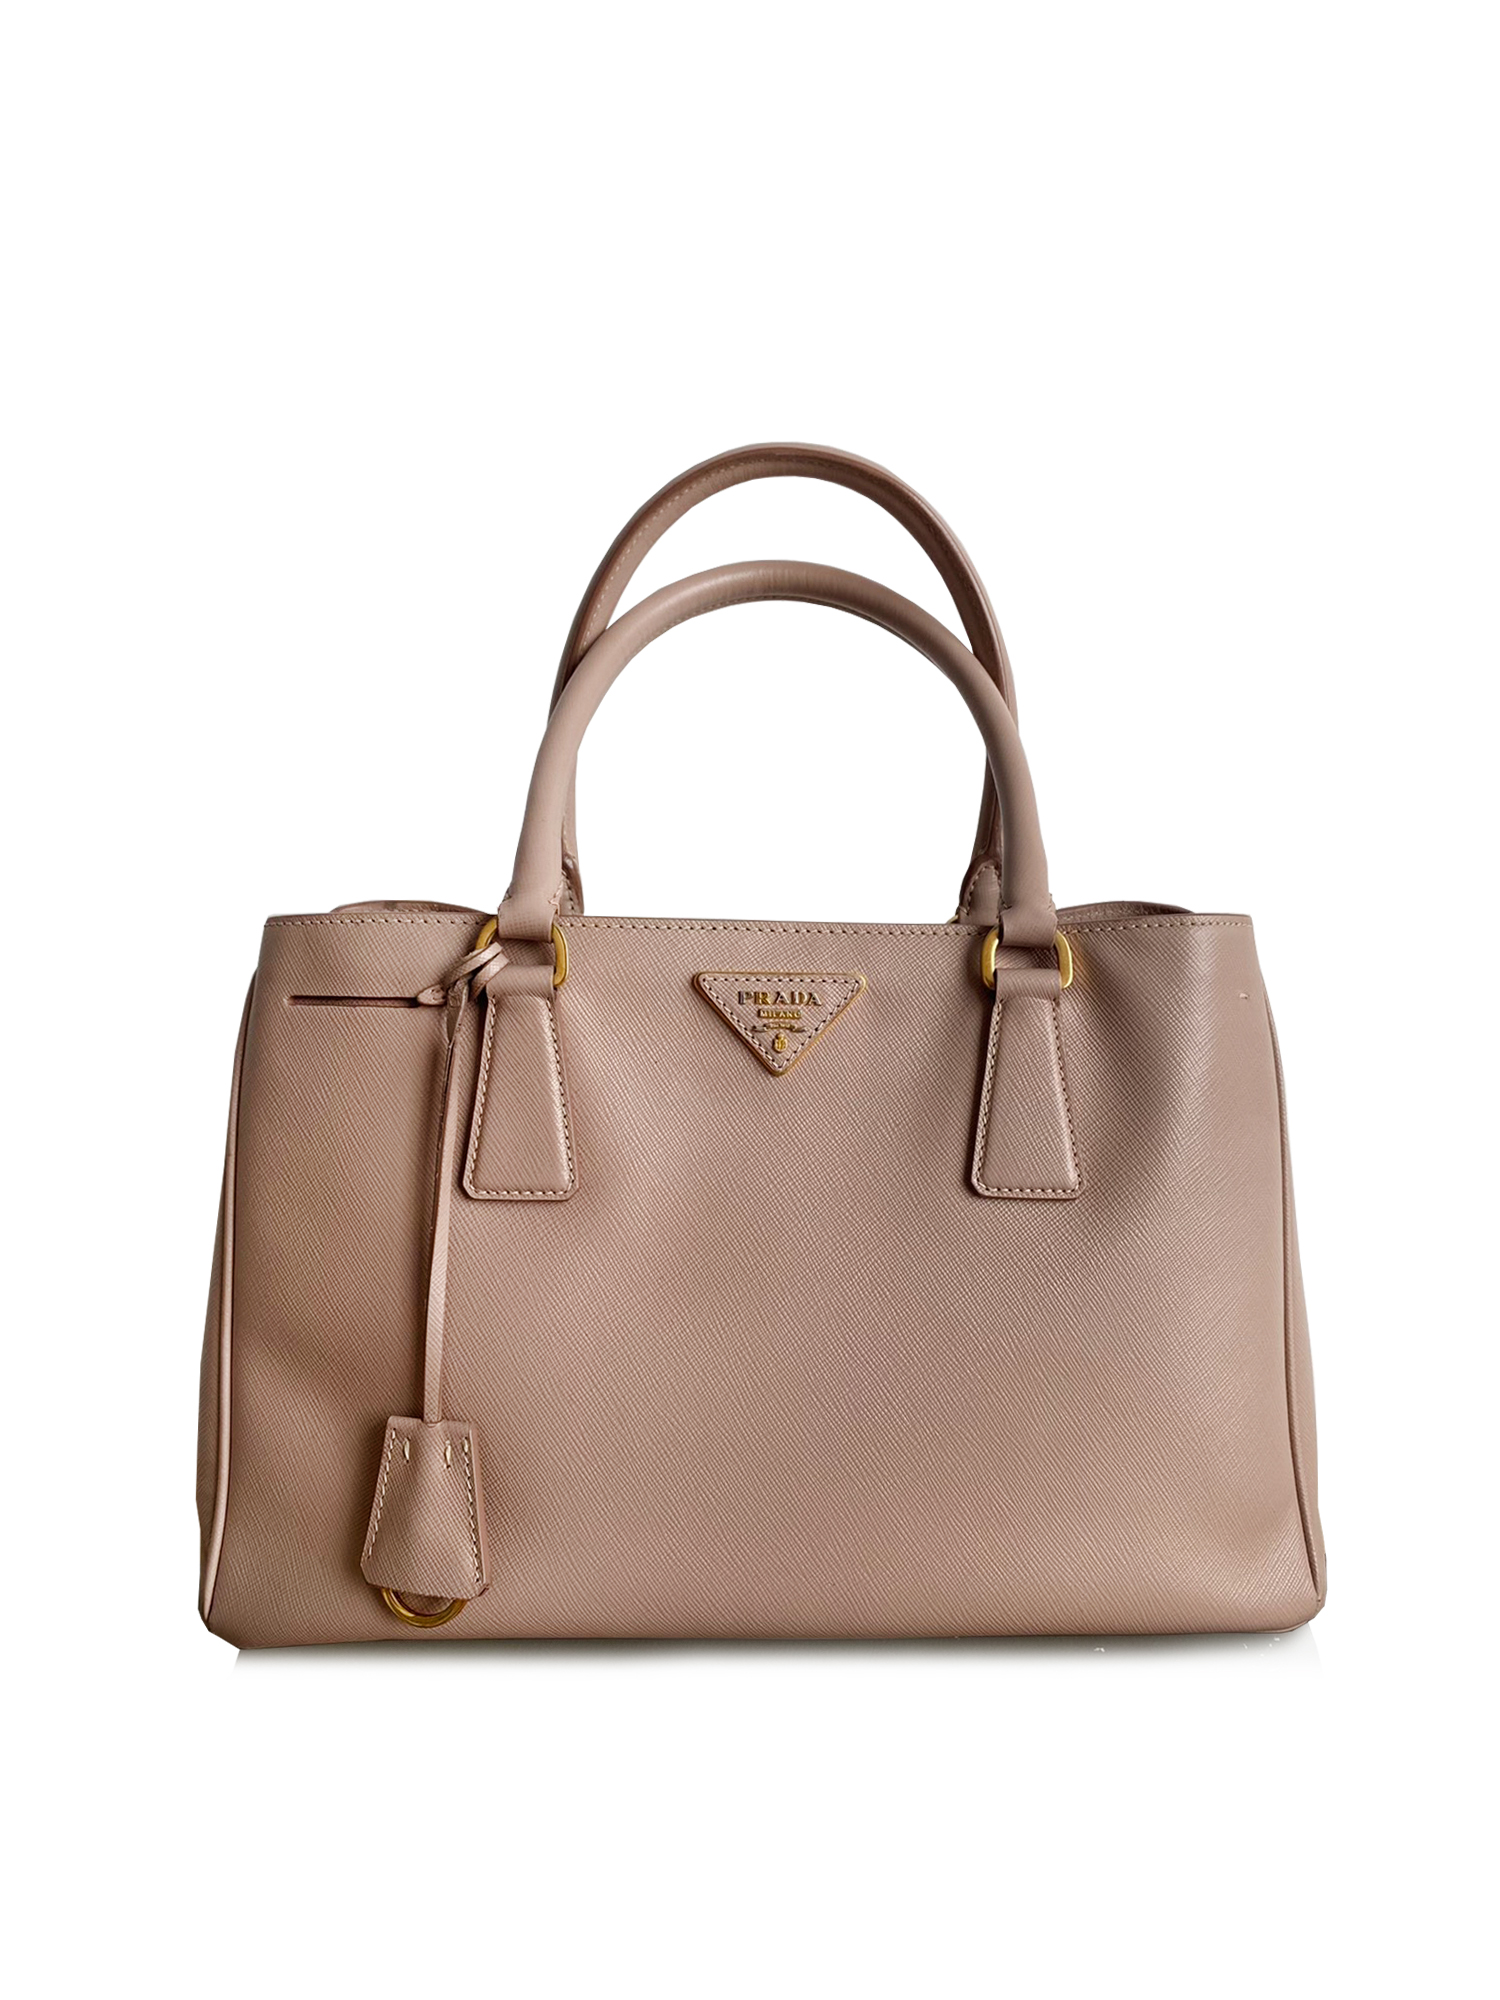 Prada-Galleria-Saffiano-Leather-Medium-Bag-in-Cameo-Beige-Size-30-1